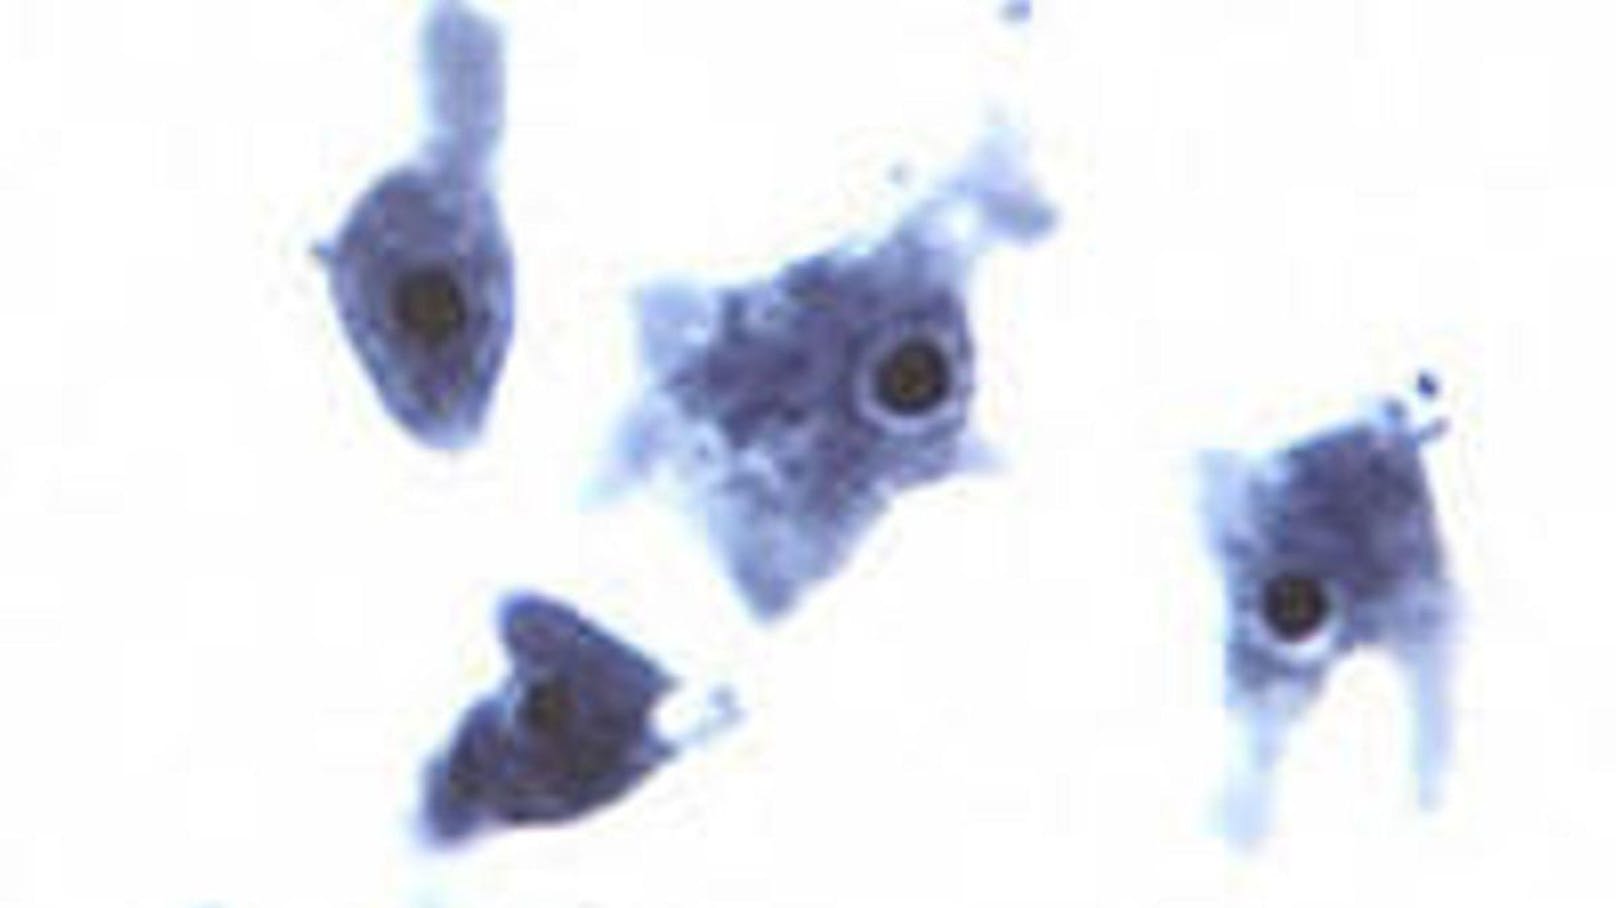 Schuld an seinem Tod: Naegleria fowleri, einer der tödlichsten Parasiten der Welt. (Im Bild: Naegleria fowleri)